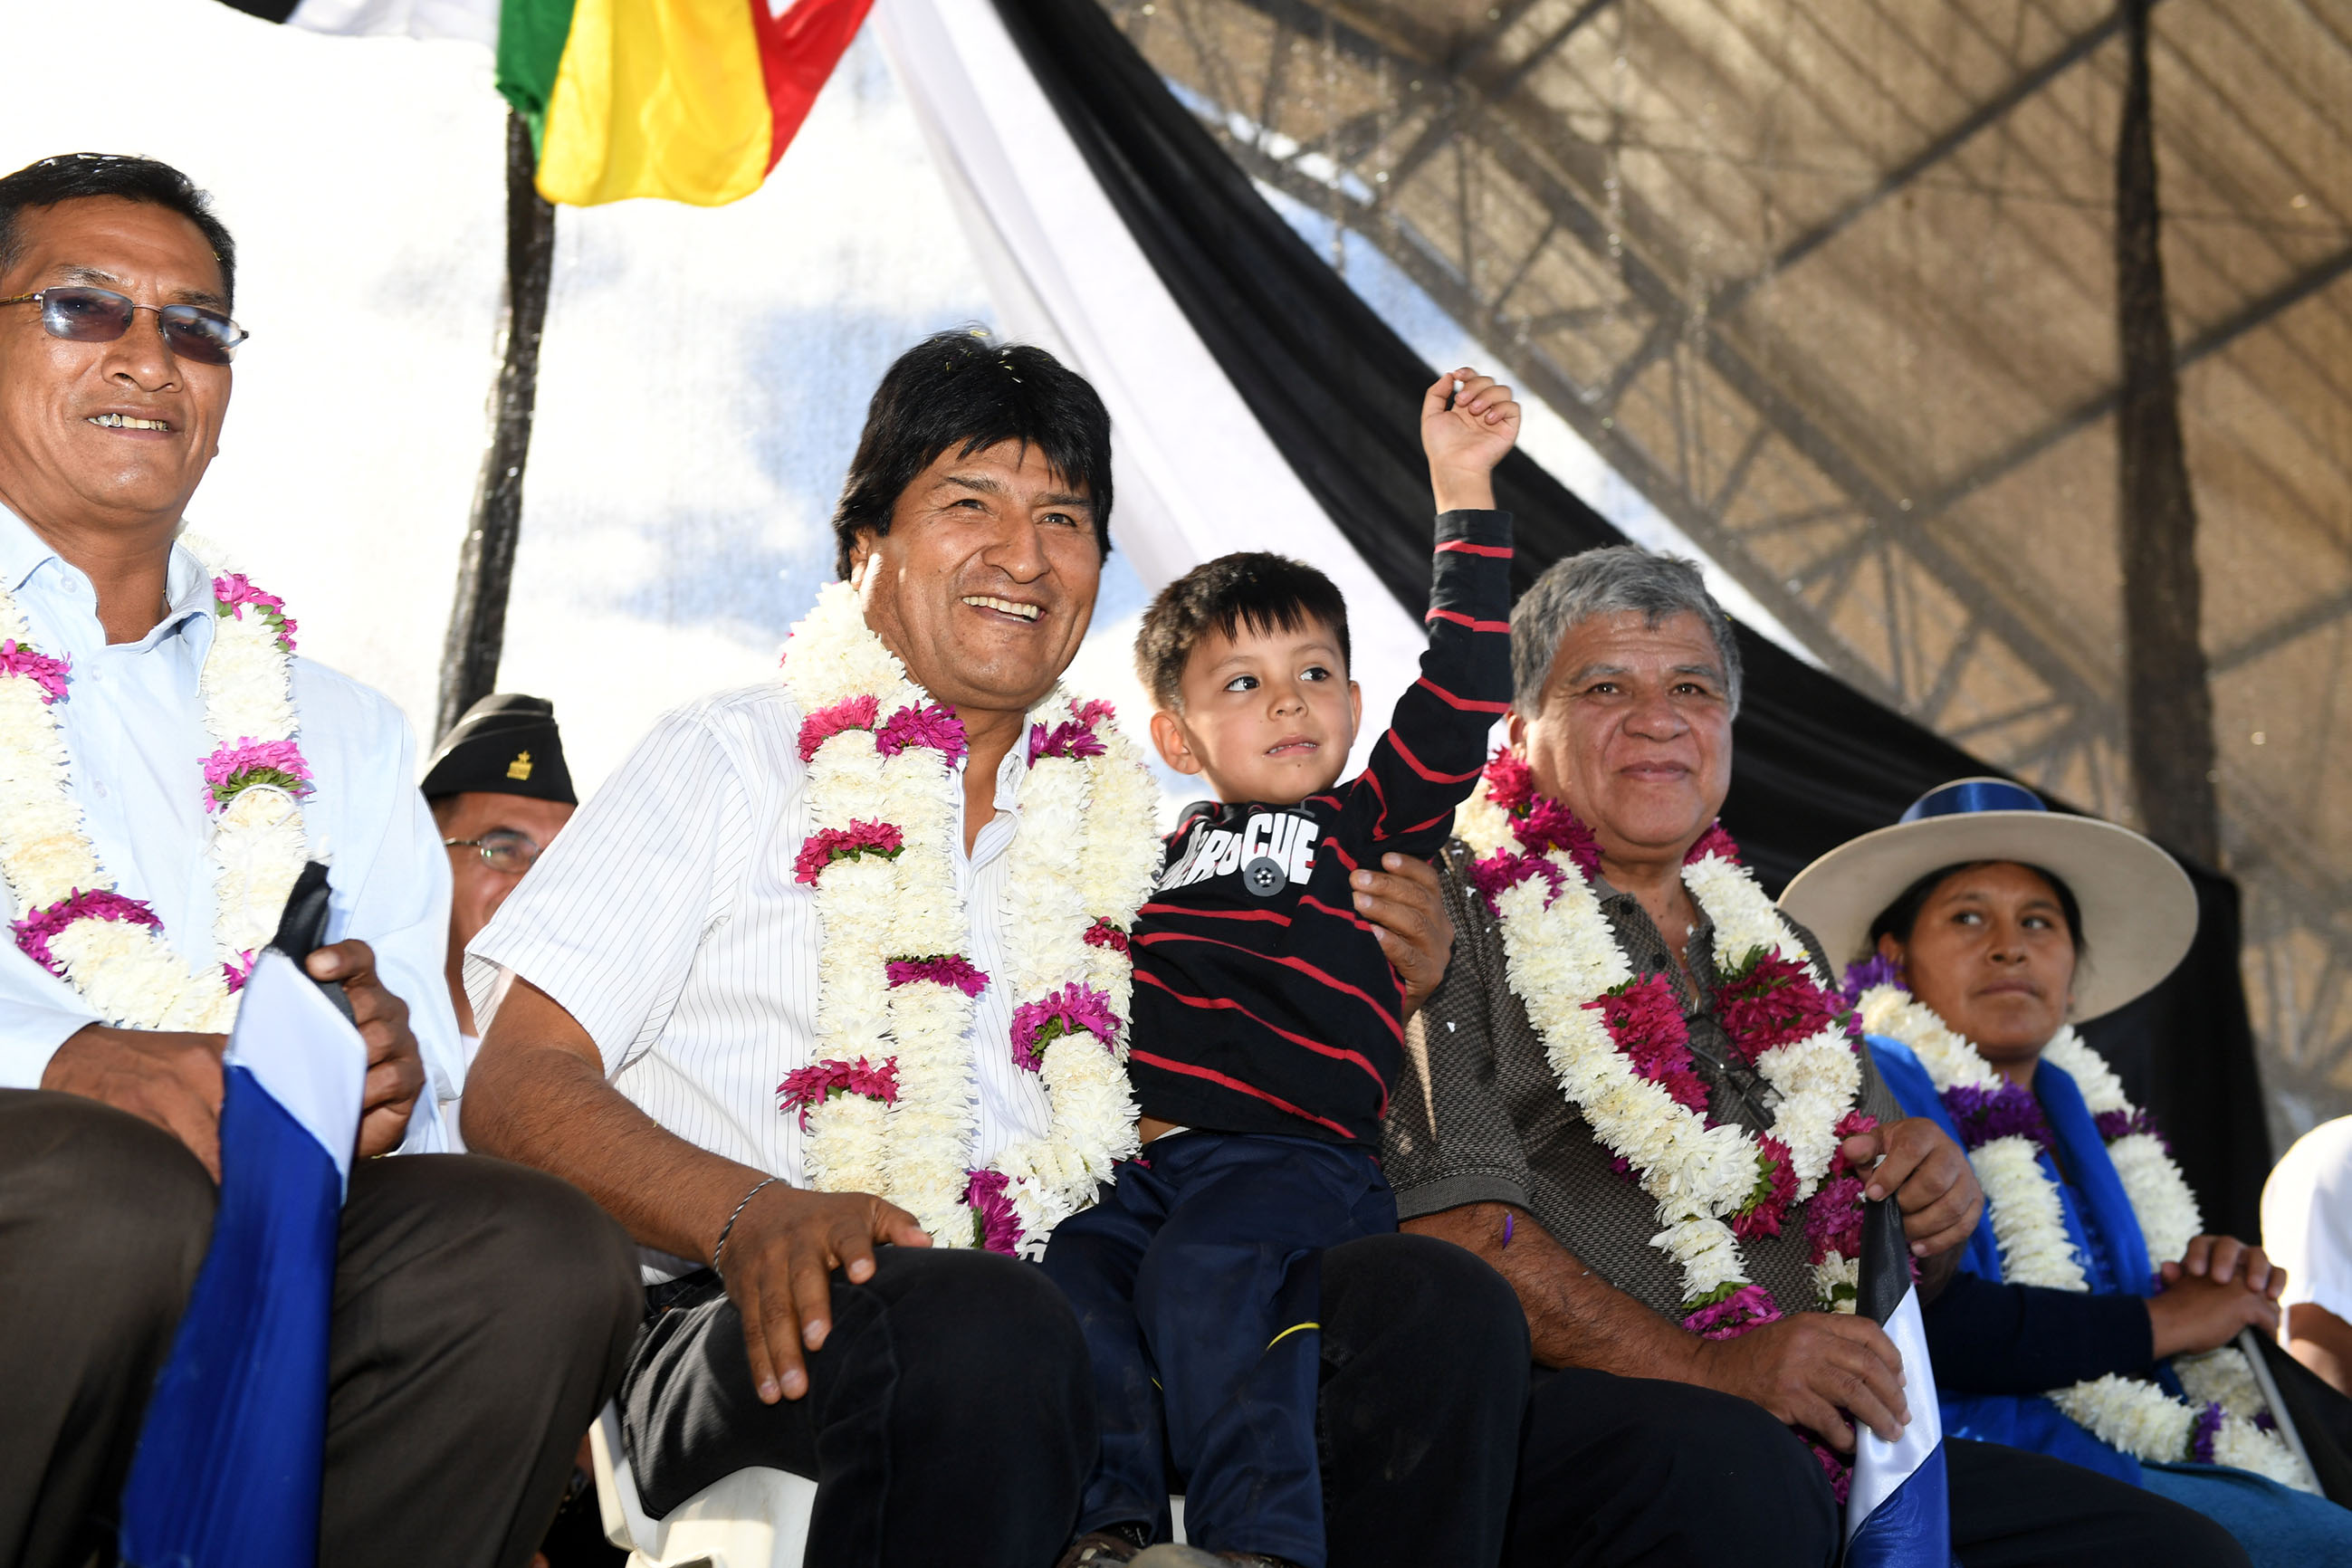 El presidente Evo Morales comparte con pobladores y autoridadades del municipio de Aiquile, en Cochabamba.